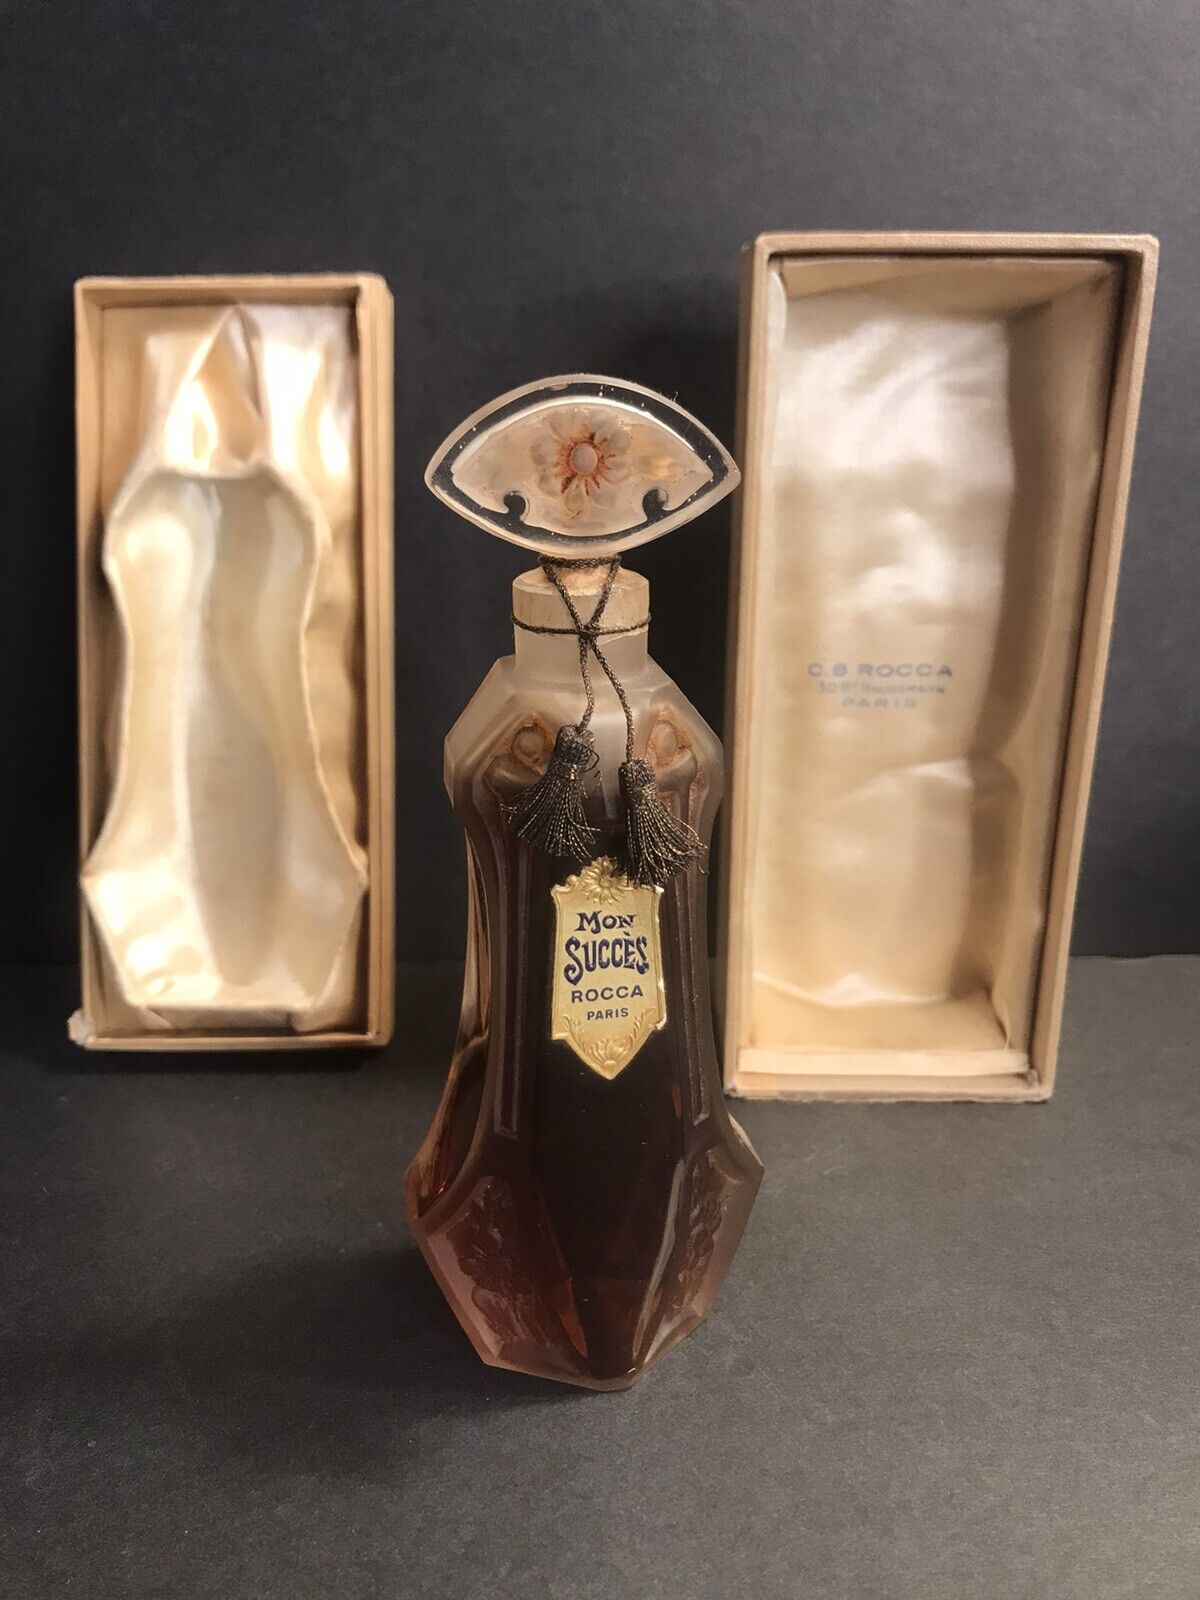 Antique perfume bottle/ Mon succès Rocca Paris/France C.1921/Flacon/Original Box